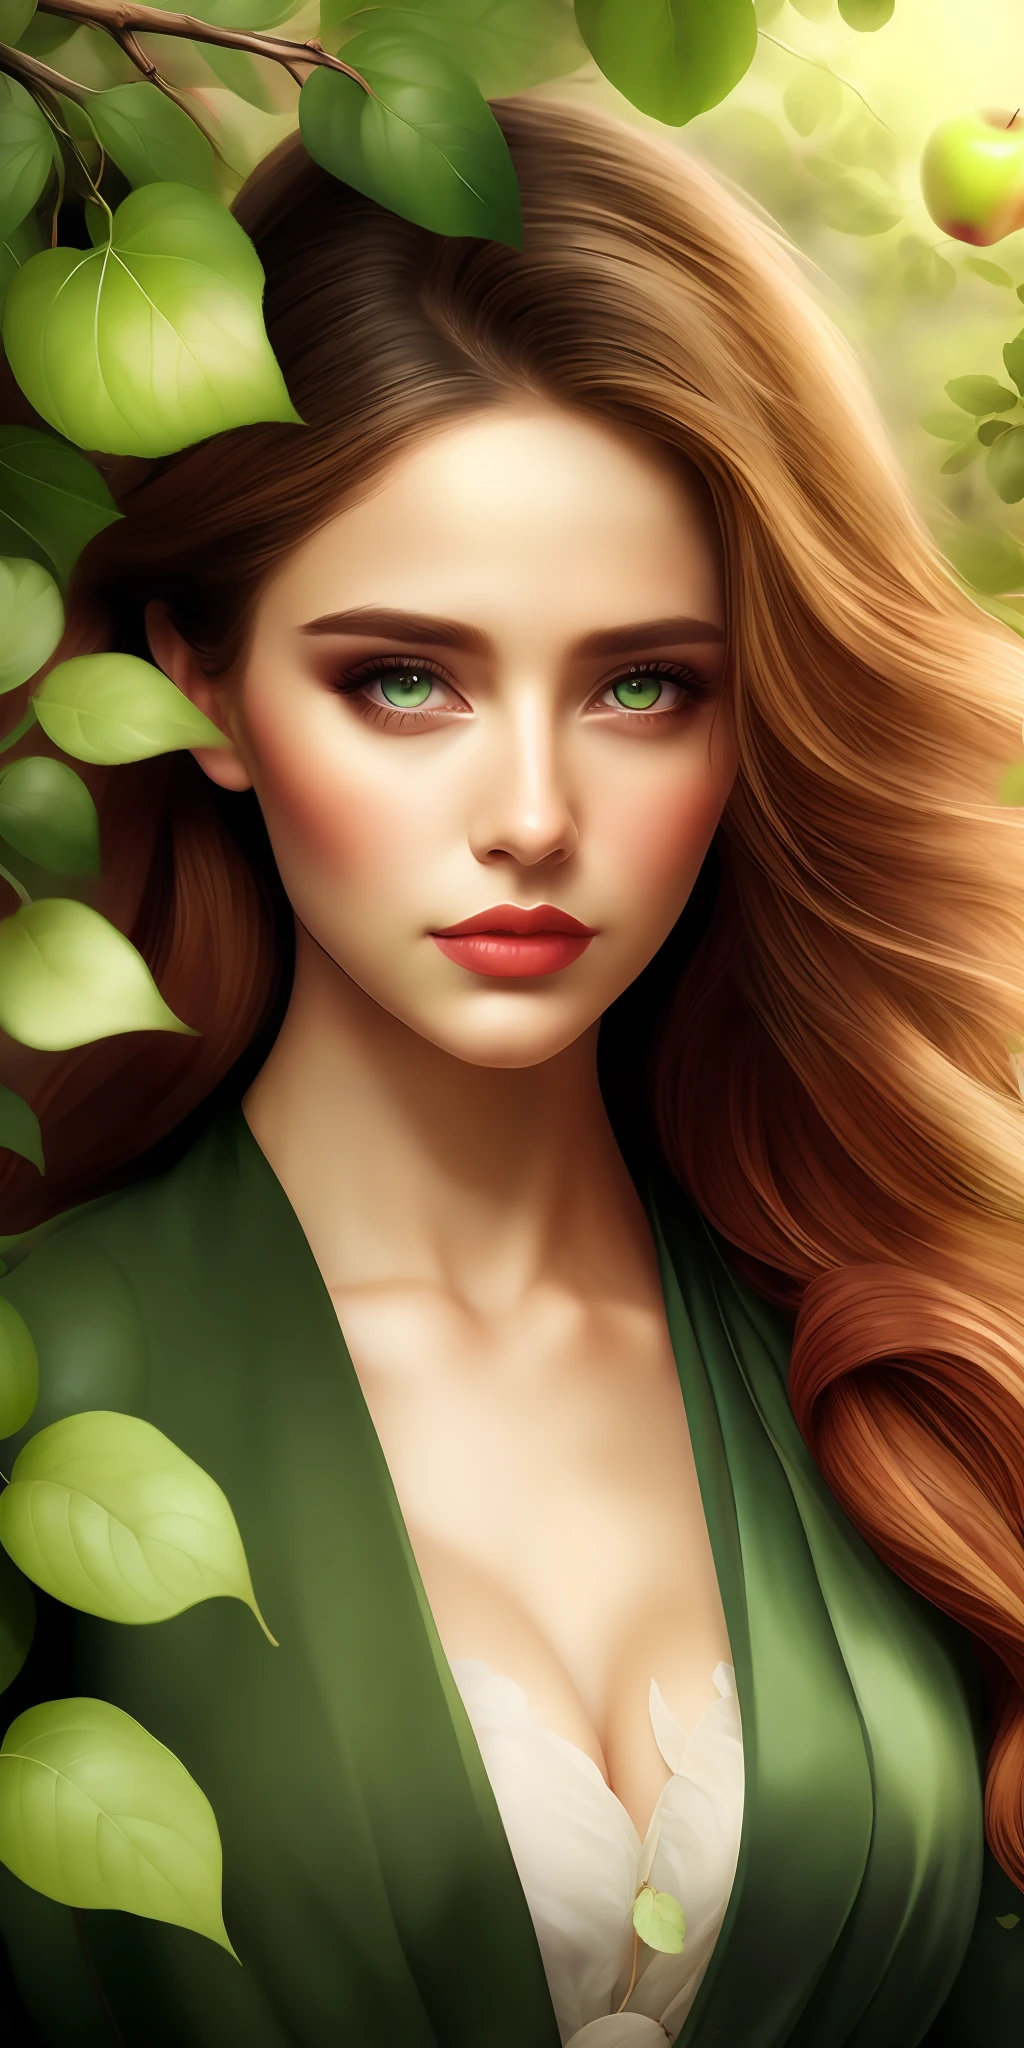 最高品質,最高解像度,8k, 芸術的なイラスト, 美しい肖像画, 傑作, 最も美しい女性,最も美しい少女, 貪欲な目,葉っぱをまとった, 緑の葉をまとった,the 最も美しい少女 in profile in front of リンゴの木, 貪欲な目,,リンゴの木,その枝のりんご